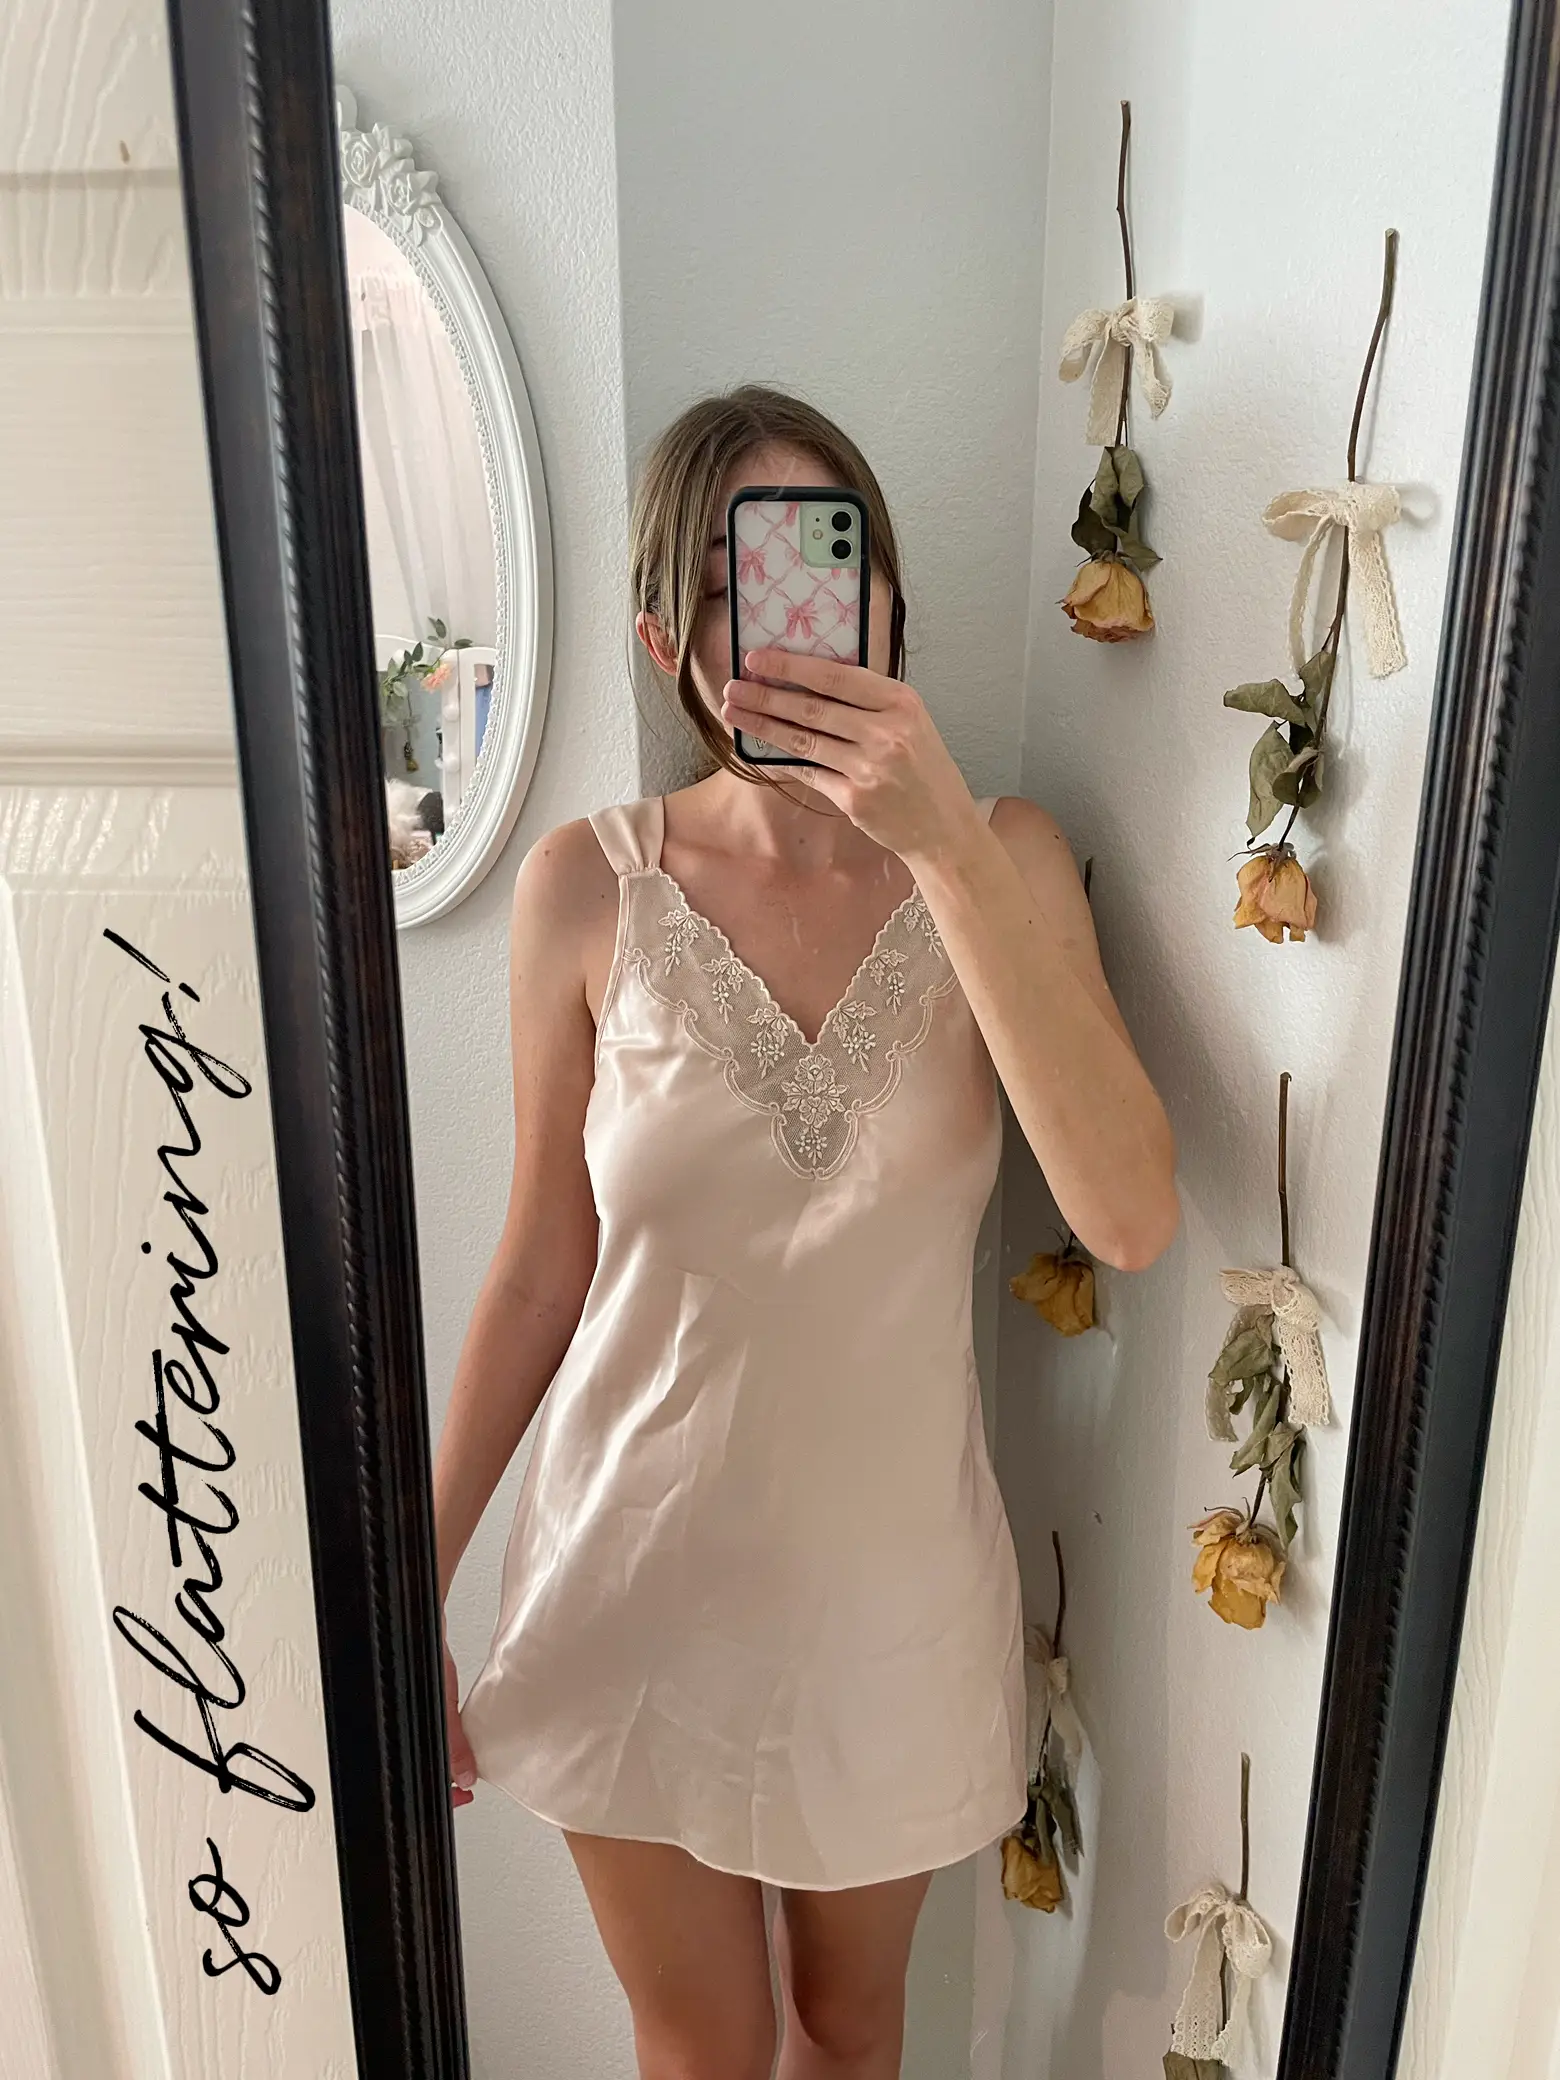 Vintage '60s(?) creamy white slip dress nightgown - Depop